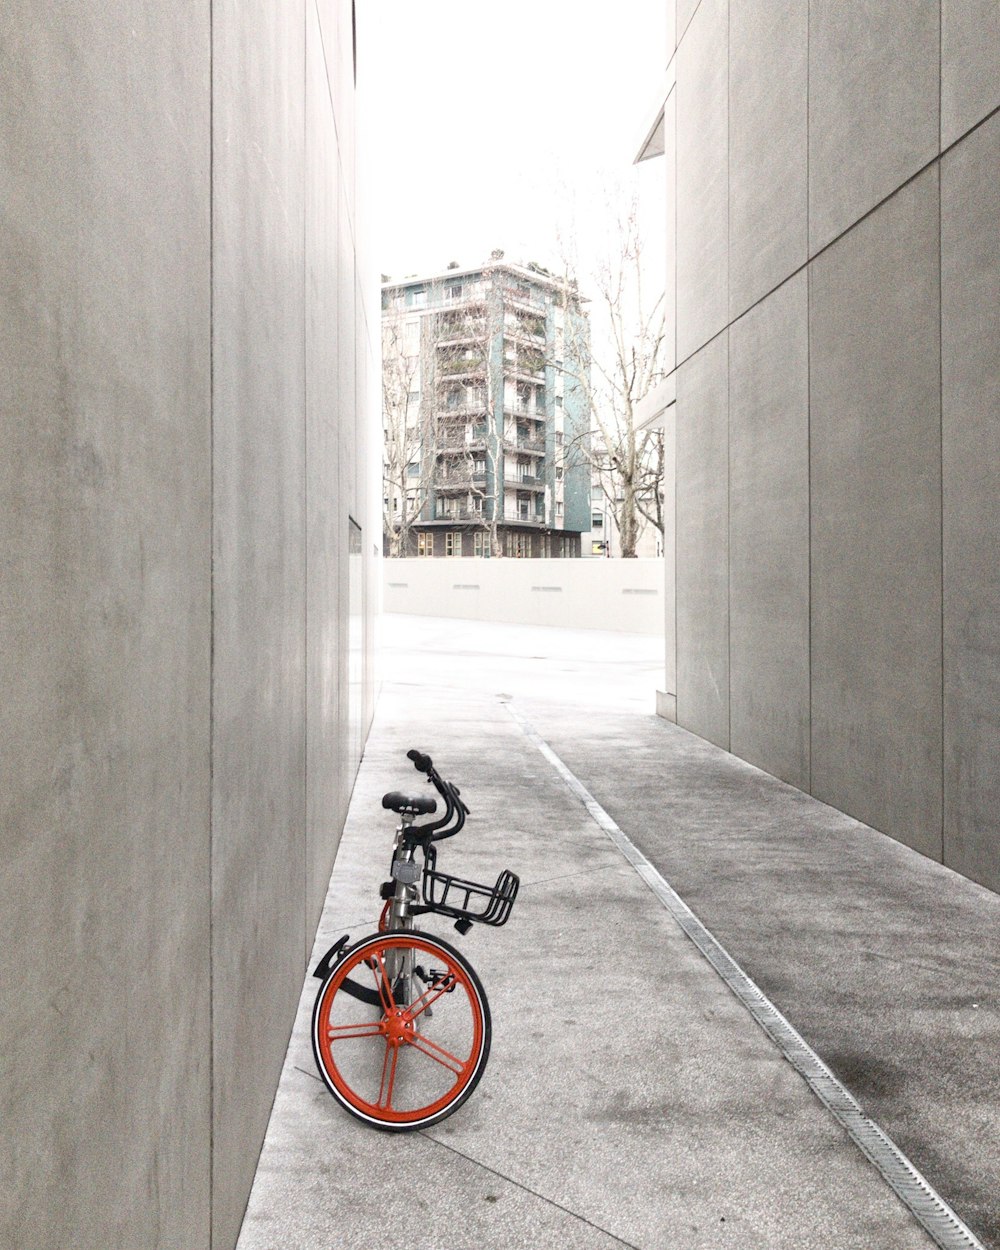 Vélo noir et orange entre les murs de béton